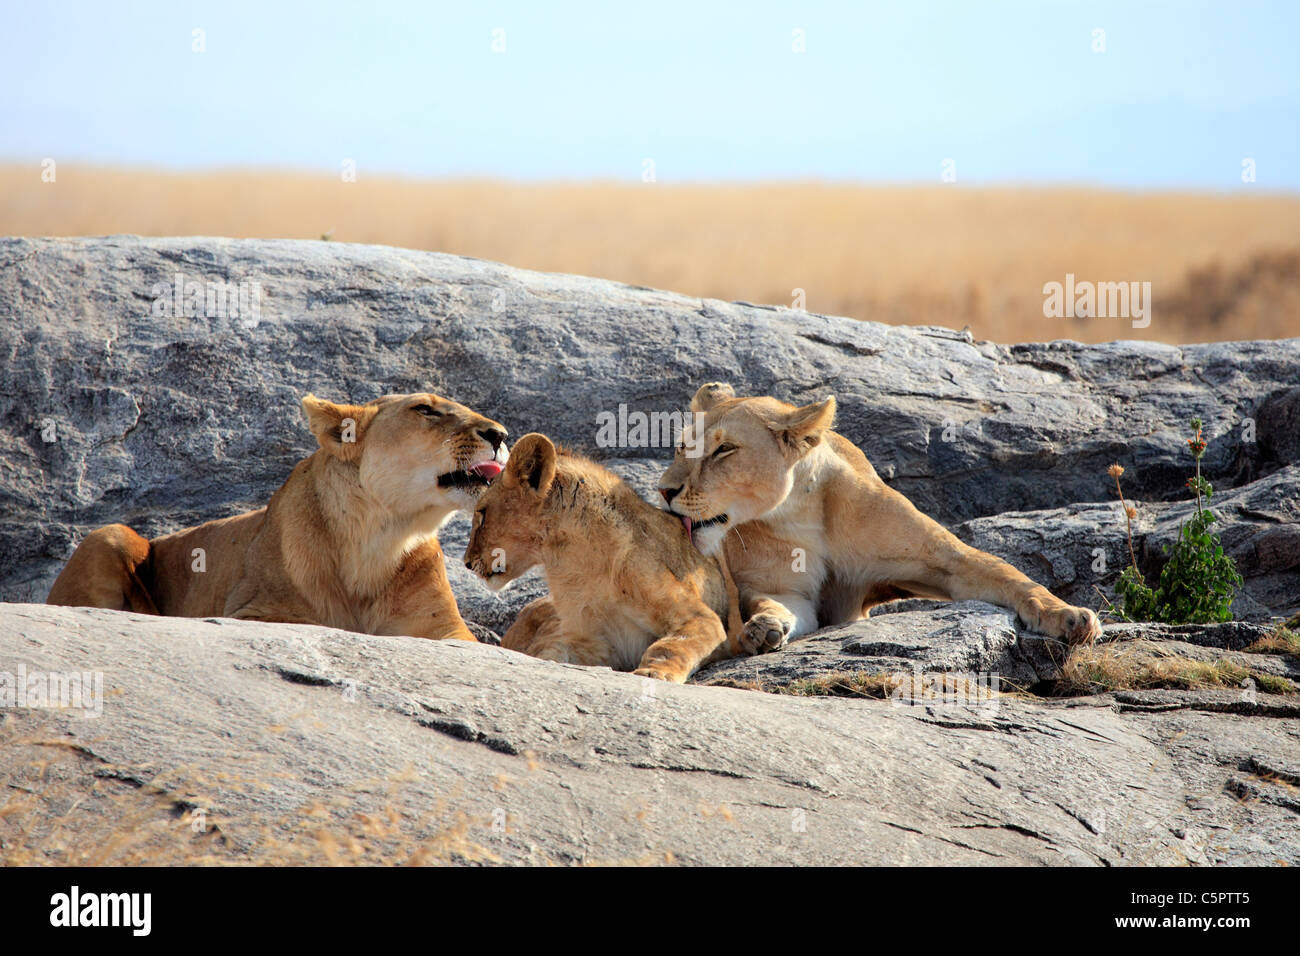 Lion (Panthera leo), le Parc National du Serengeti, Tanzanie Banque D'Images